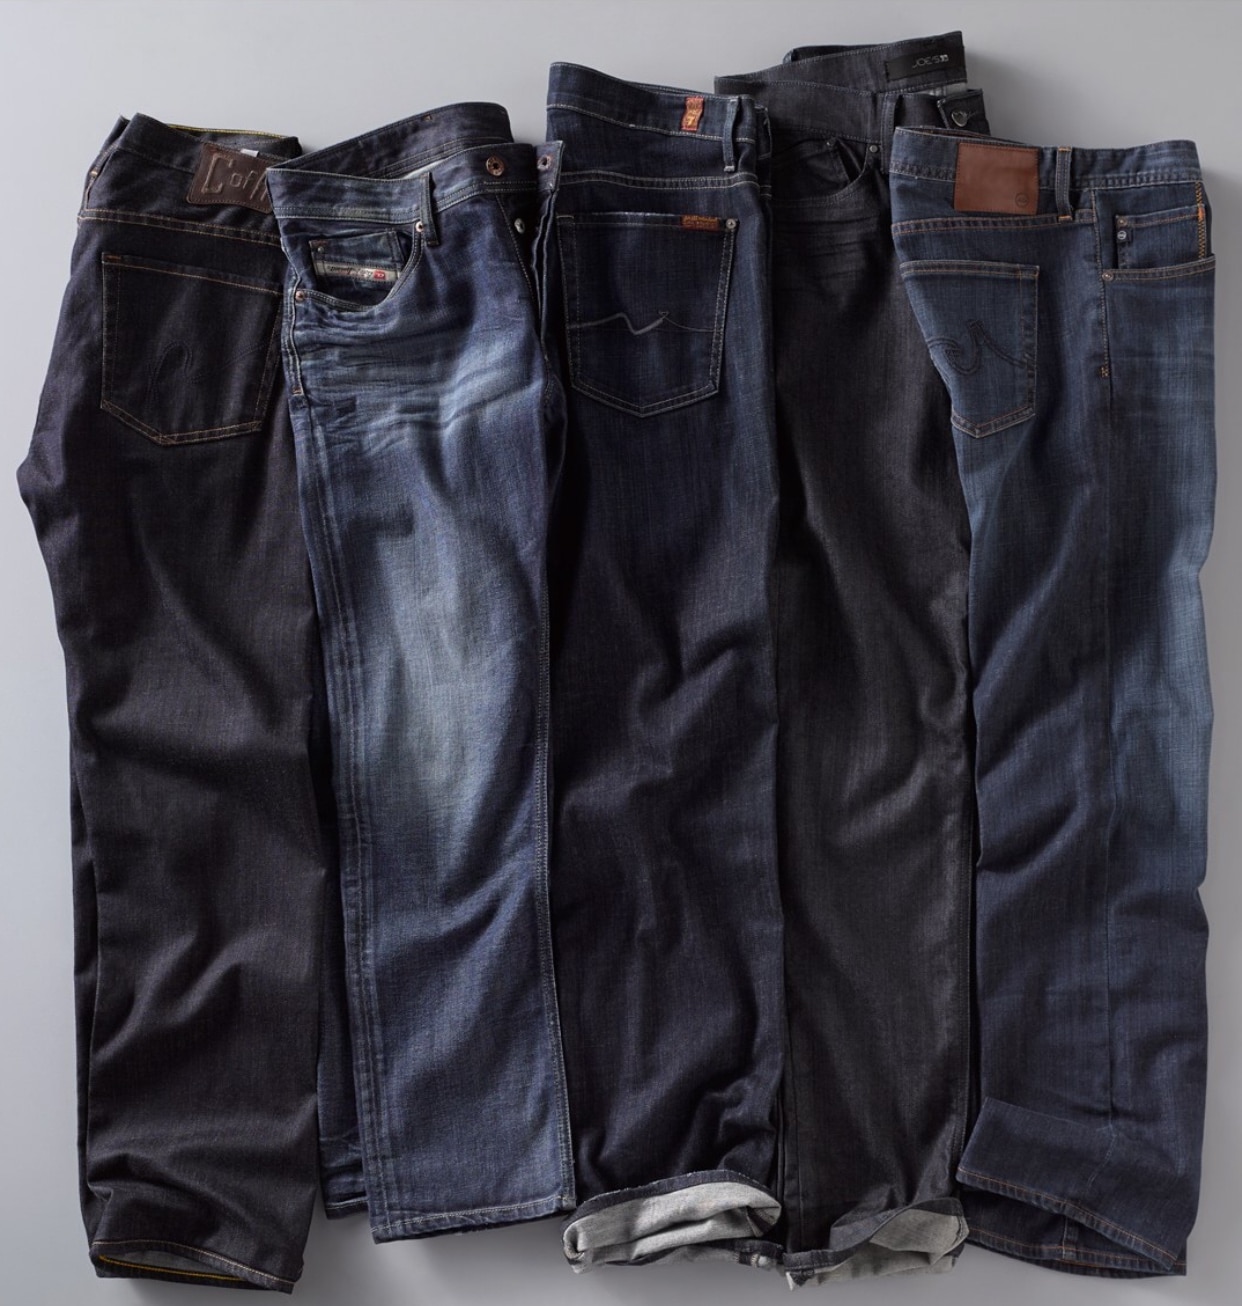 nordstrom protege jeans